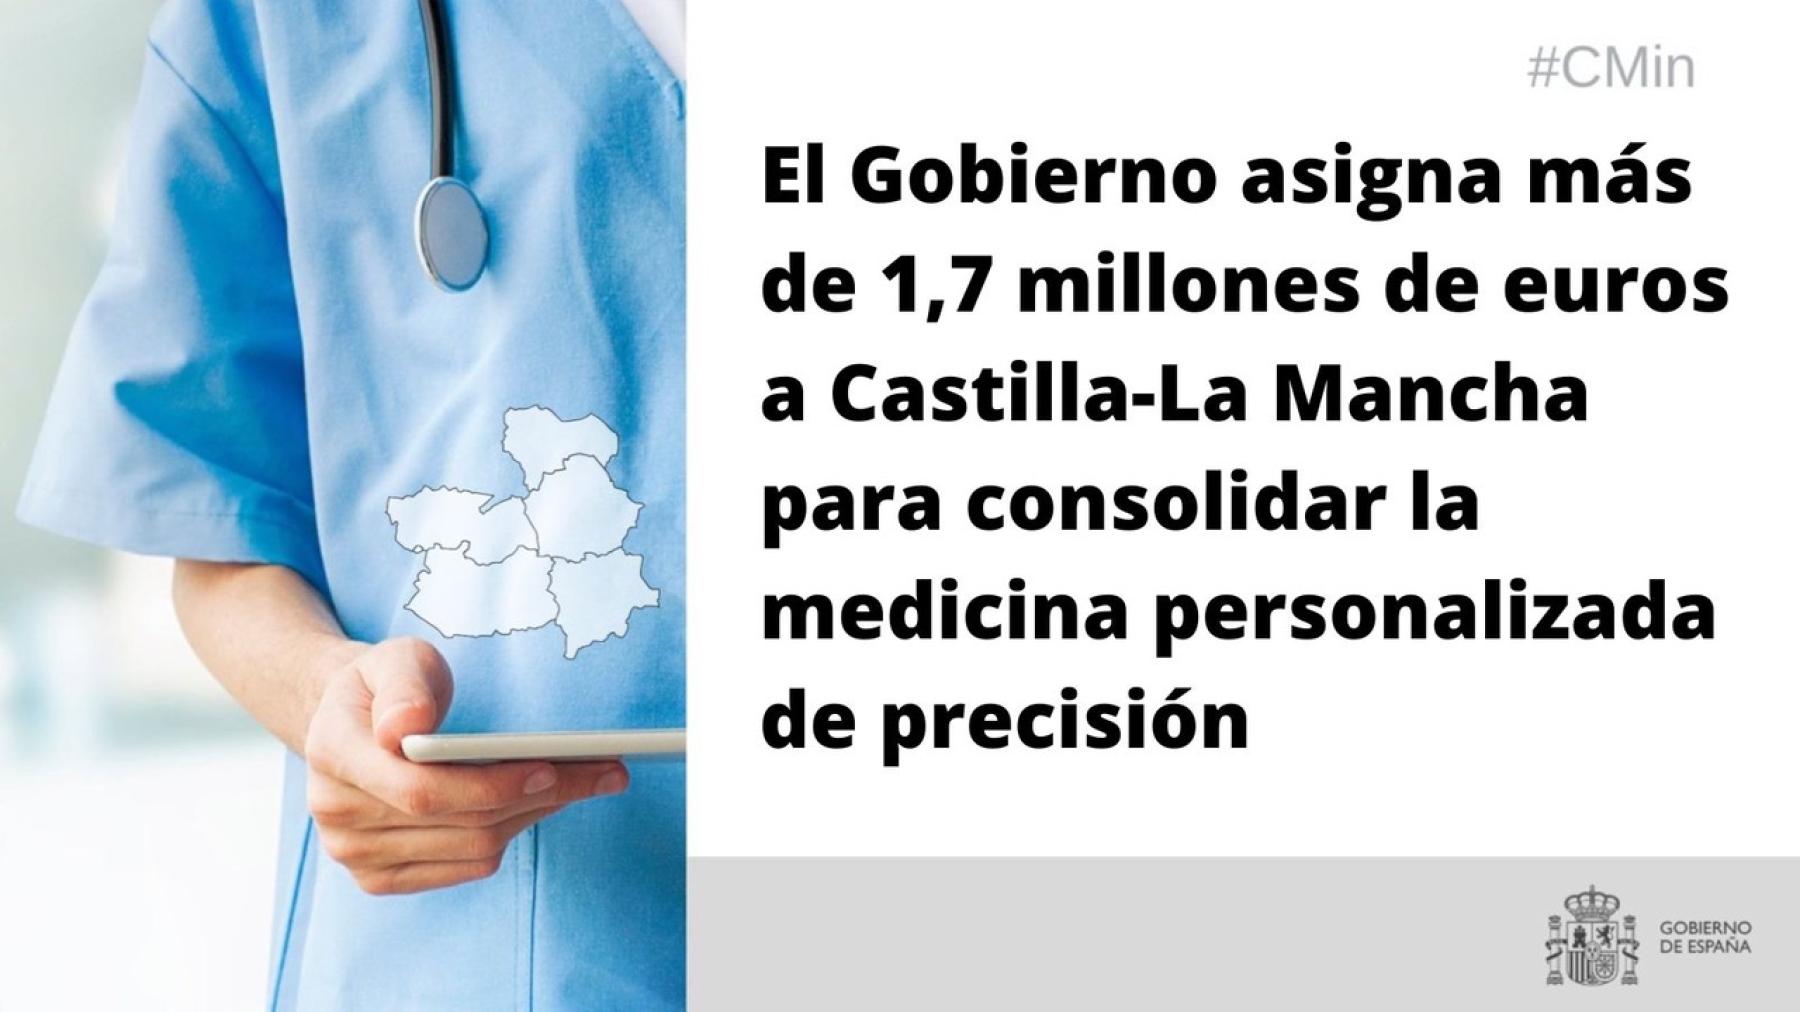 El Gobierno asigna más de 1,7 millones de euros a Castilla-La Mancha para consolidar la medicina personalizada de precisión